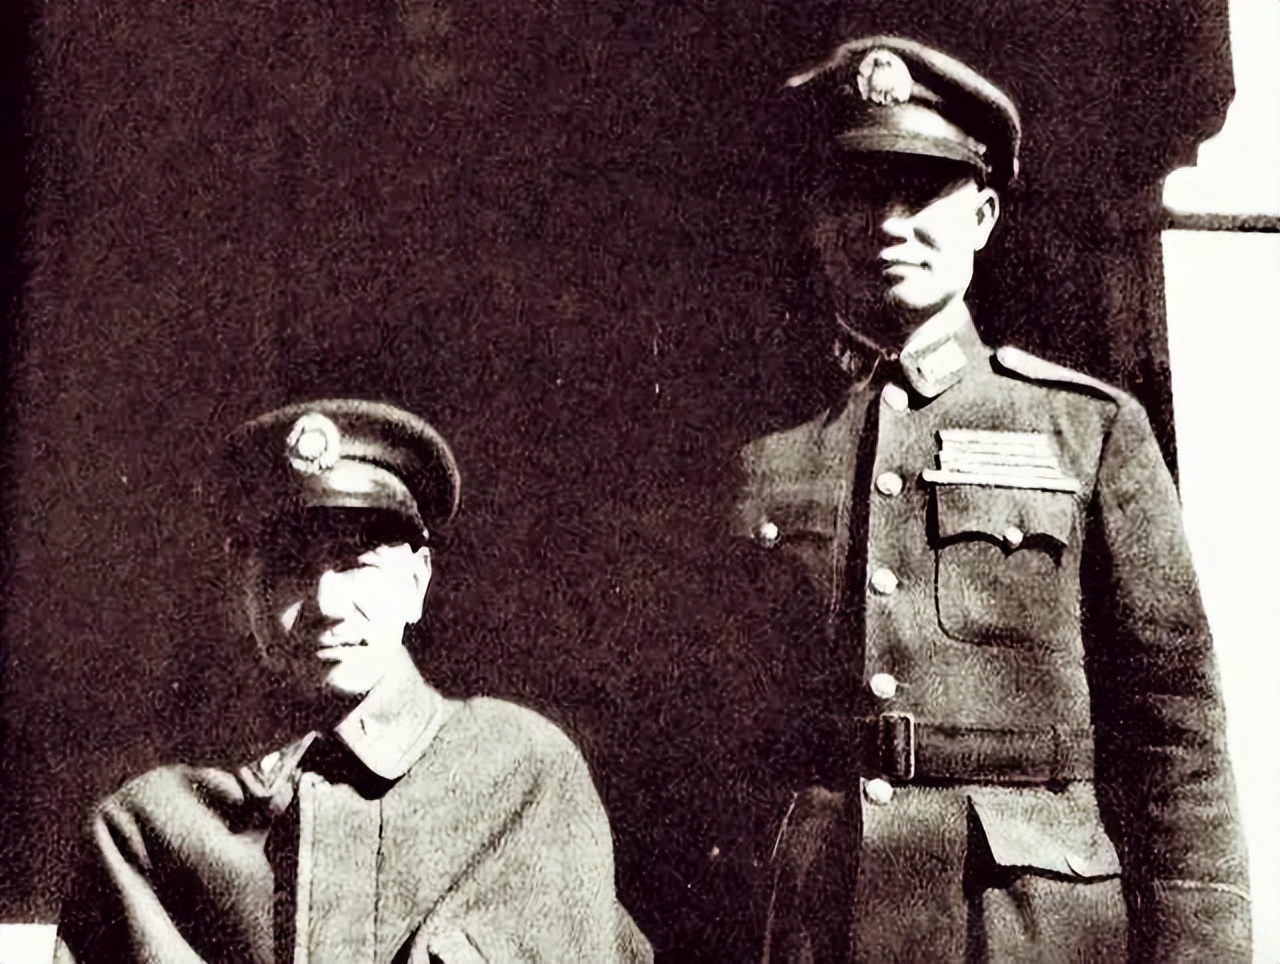 Zhang Zhizhong was wronged to contradict Chiang Kai-shek - iMedia